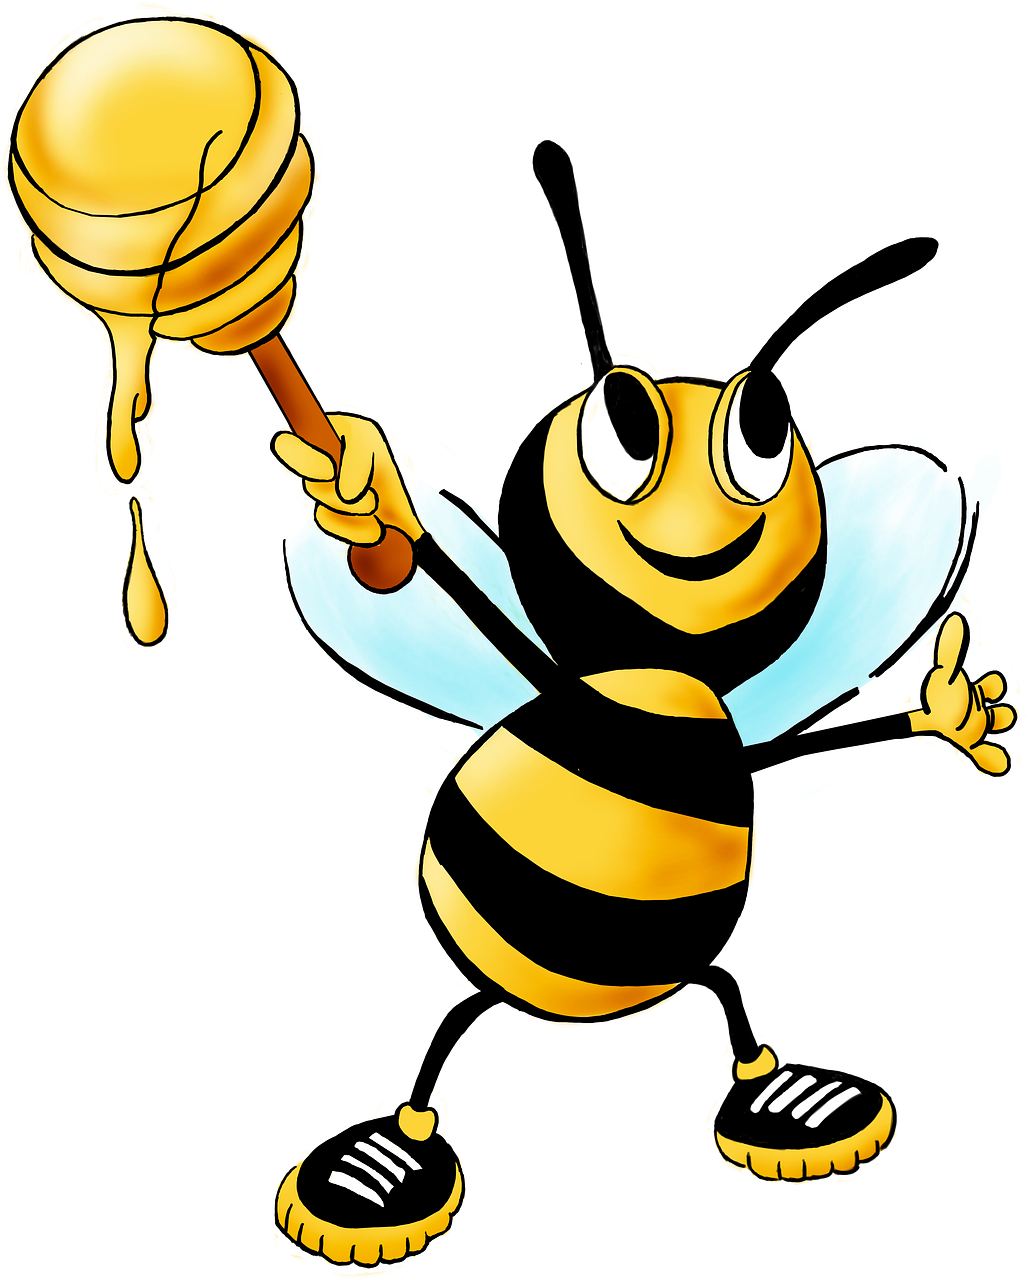 Honig- und Bienenwachsseife: schützende und weichmachende Eigenschaften